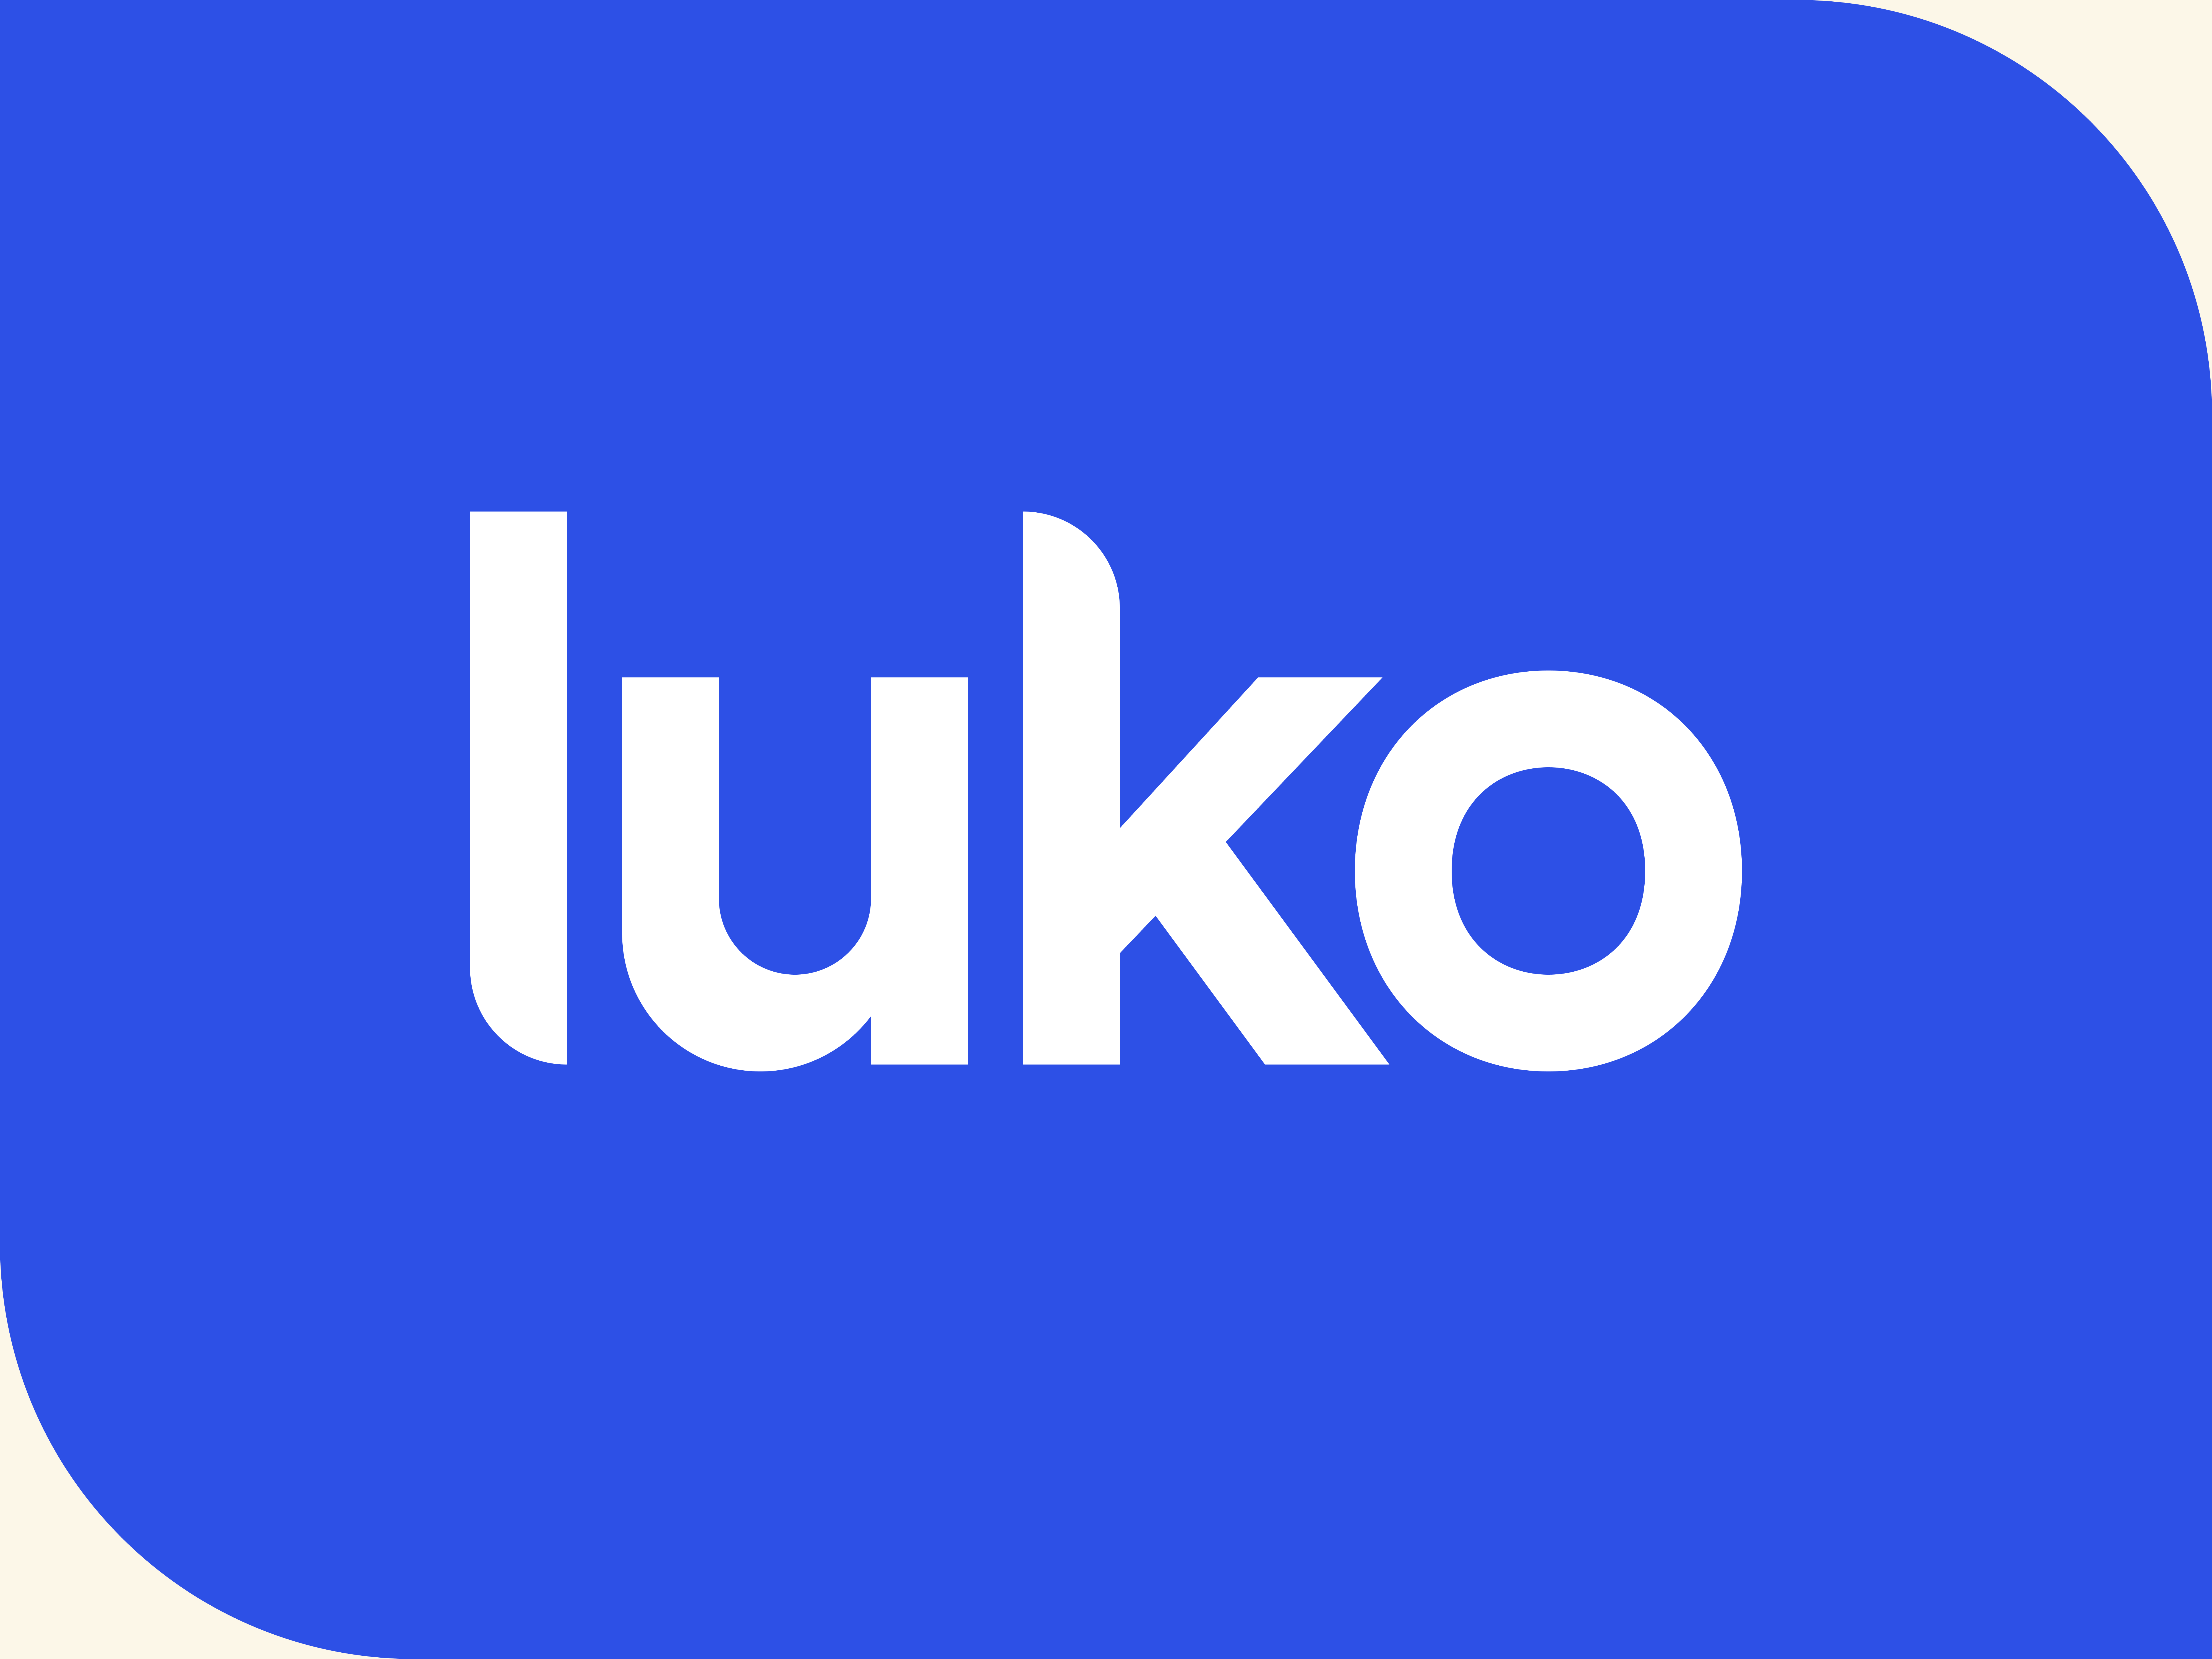 Luko investment announcement